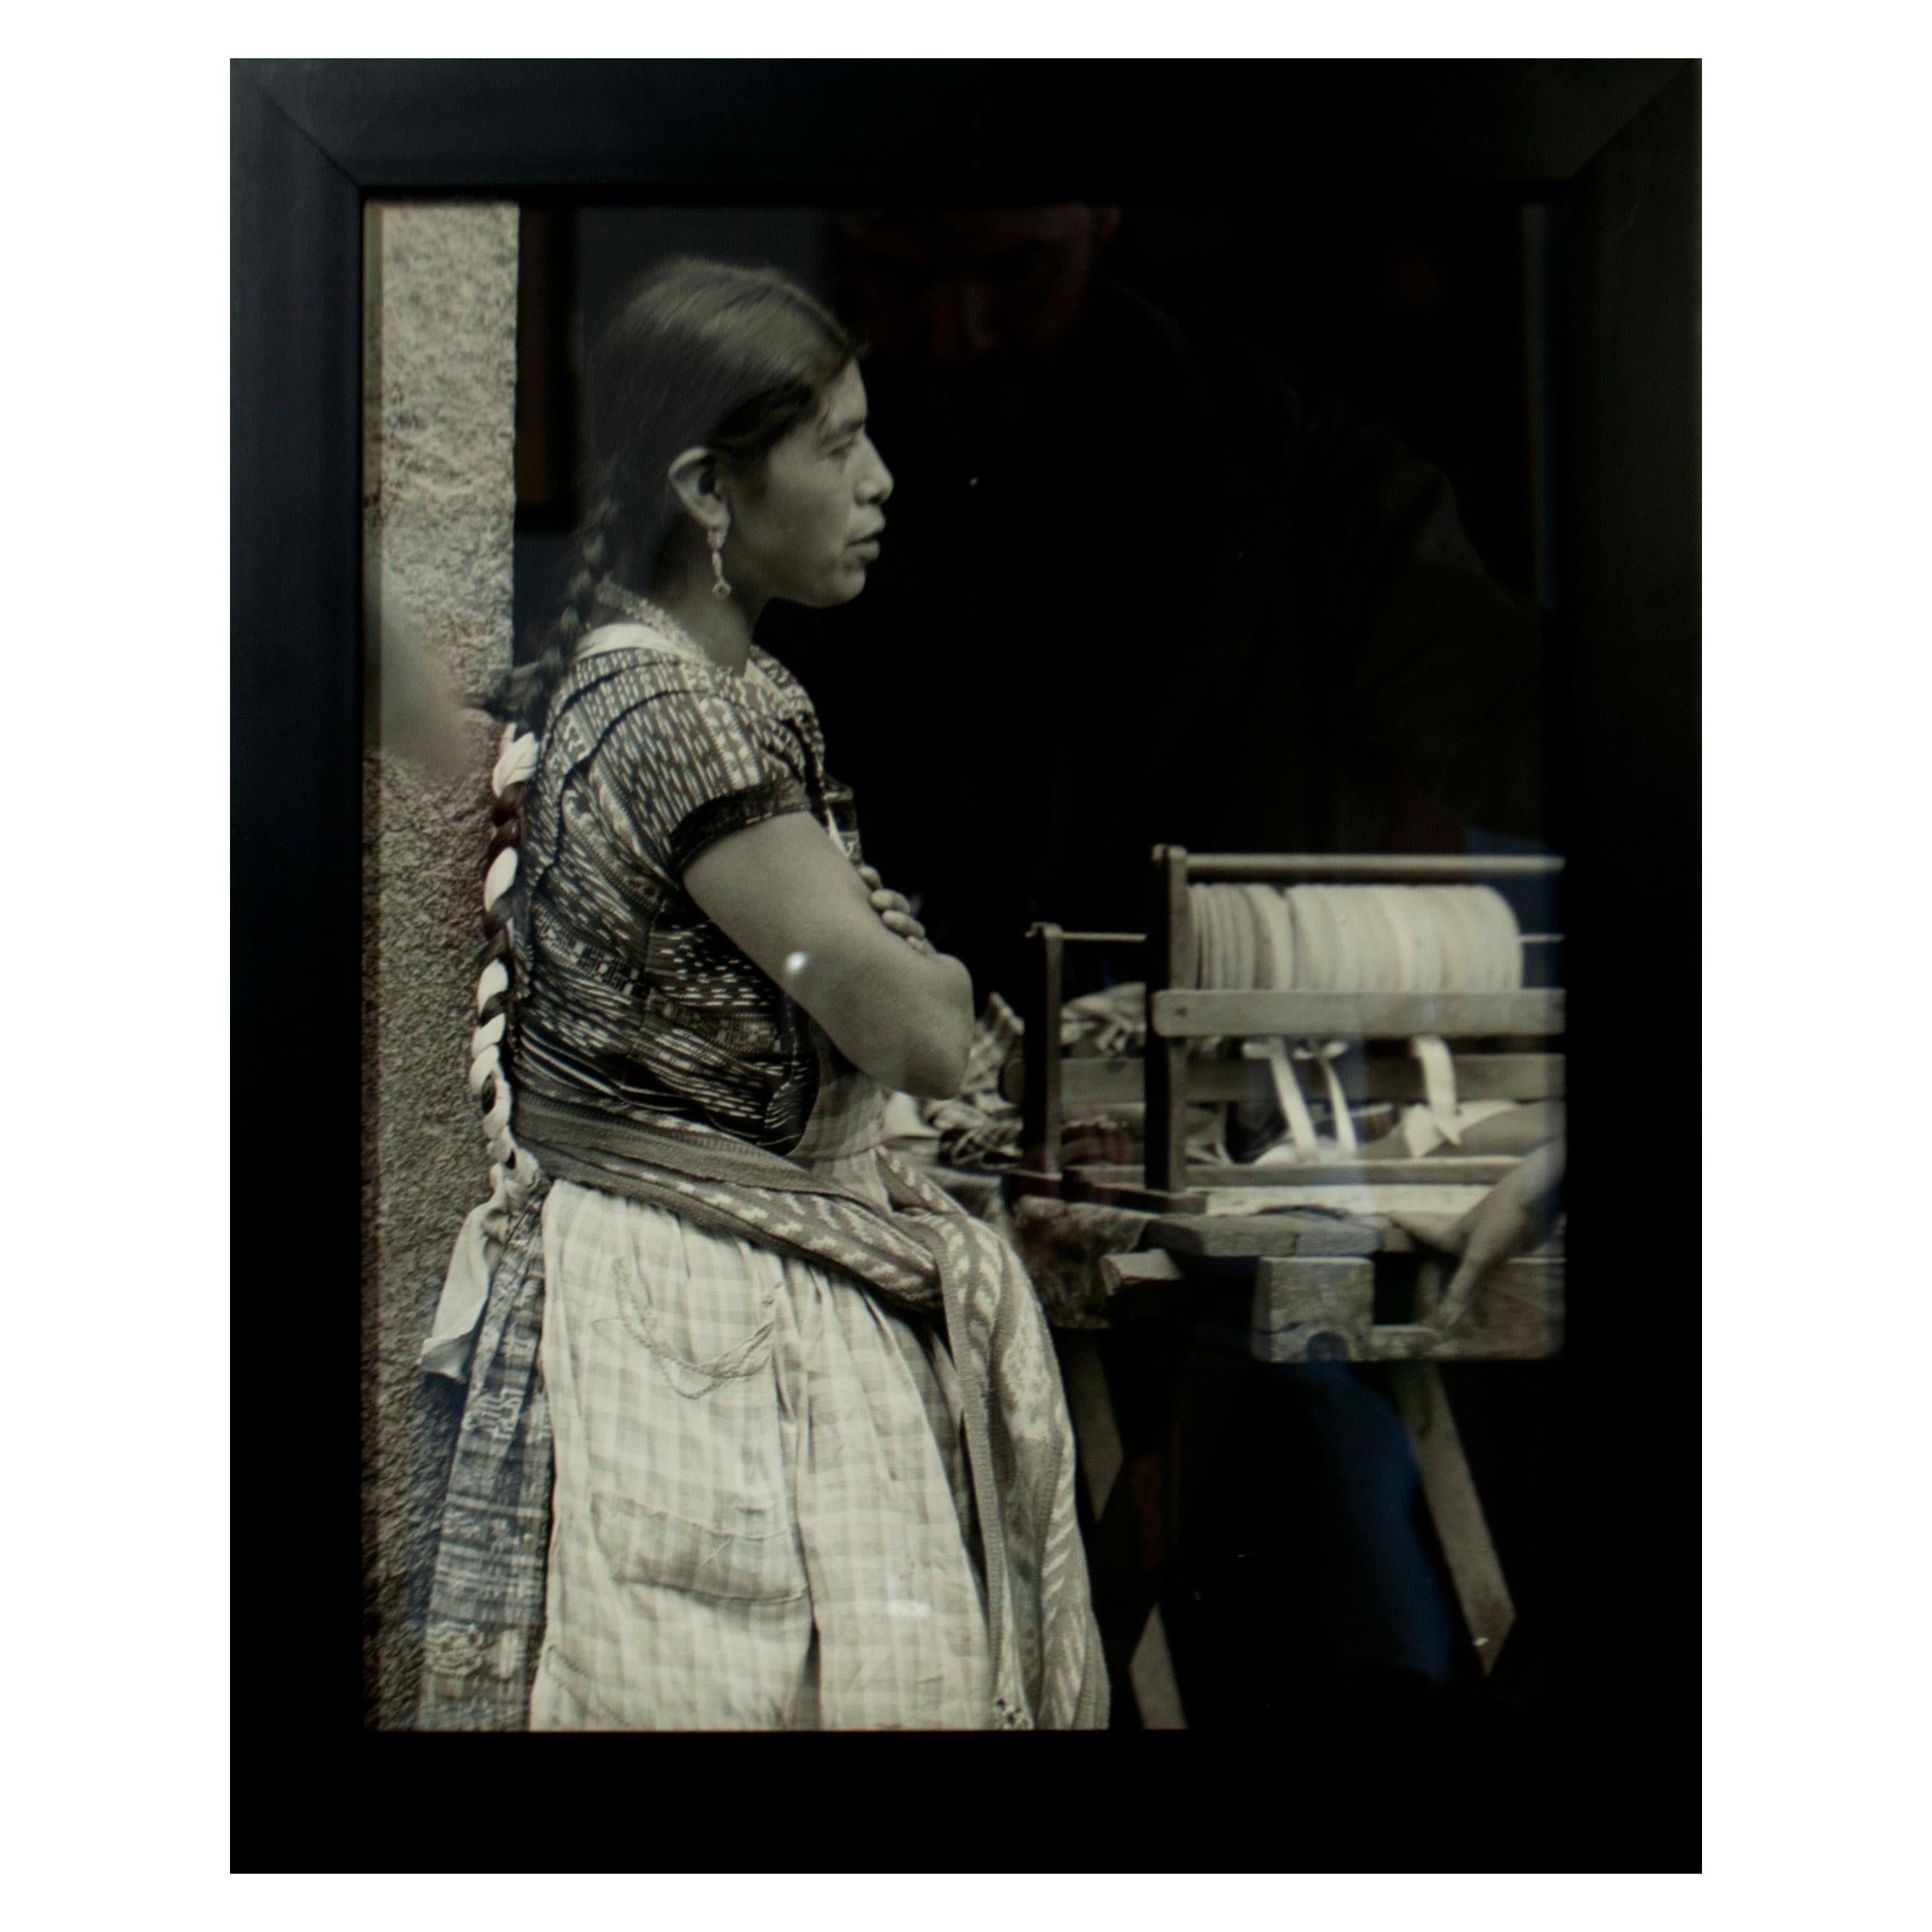 Diese 16"  x 13" schwarz-weißes Vintage-Foto, das das Seitenprofil einer indigenen südamerikanischen Frau zeigt. Es handelt sich um ein Porträt in 3/4-Länge, das die Figur knapp oberhalb des Knies und nach oben hin abbildet, wobei ihr Kopf knapp